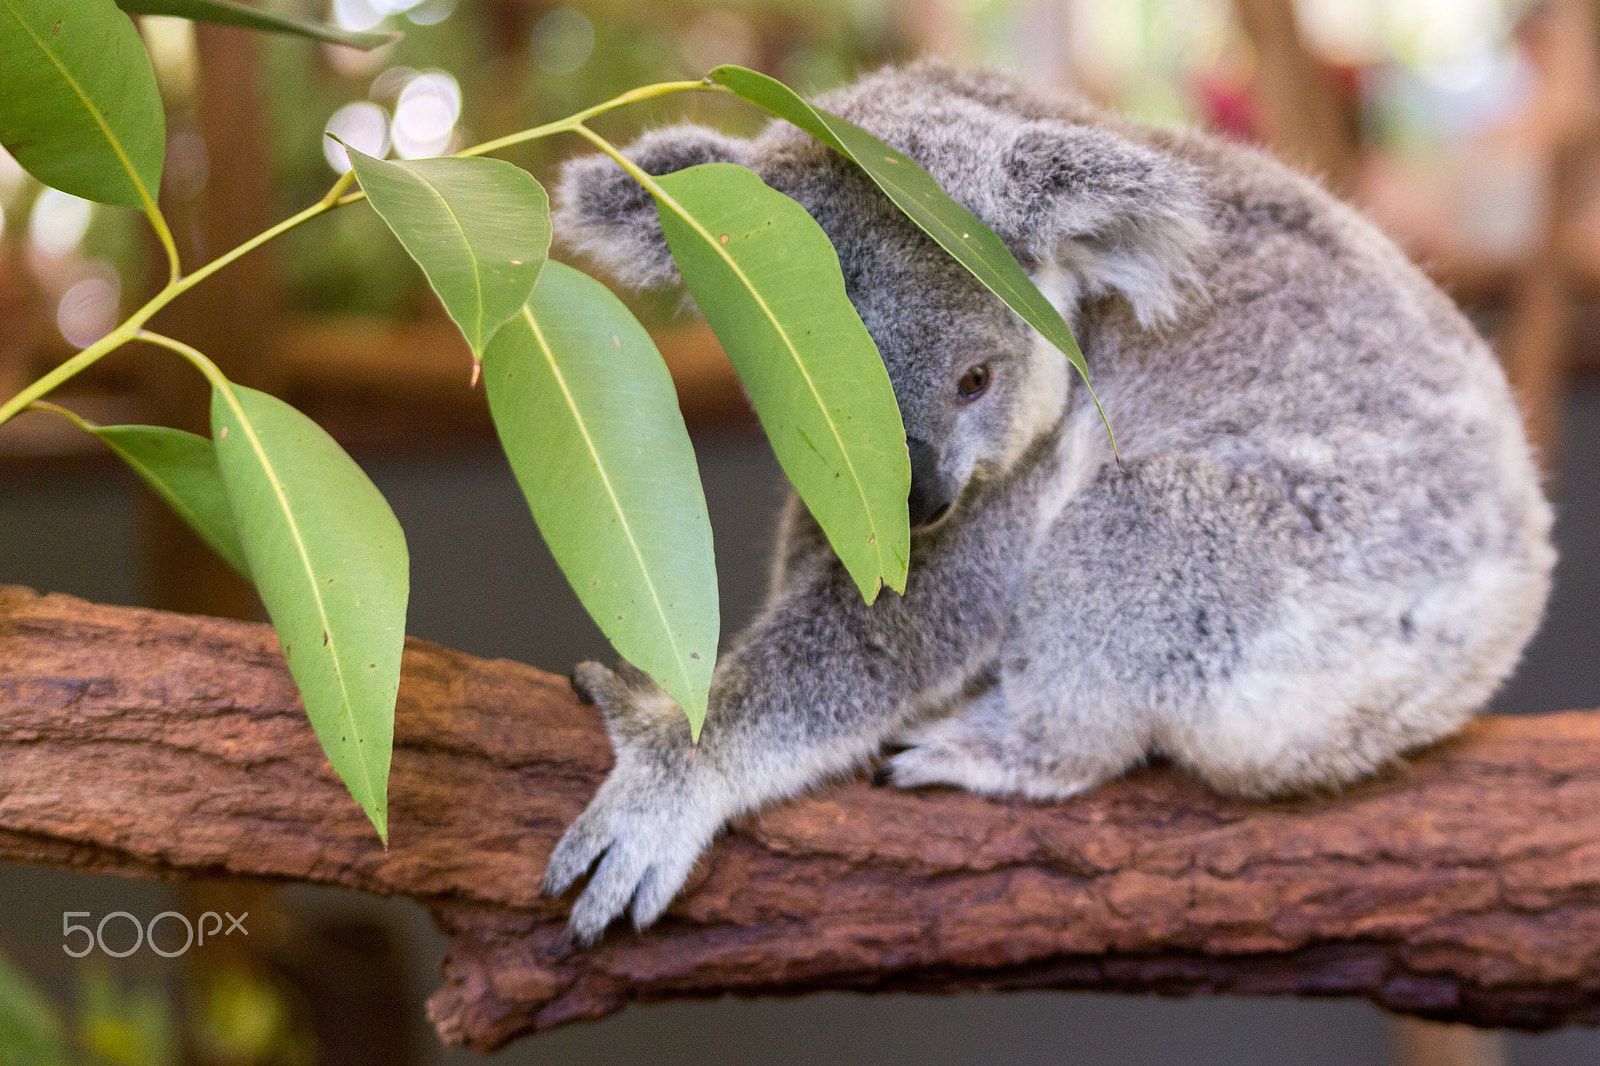 Canon EOS 6D sample photo. Koala hiding photography